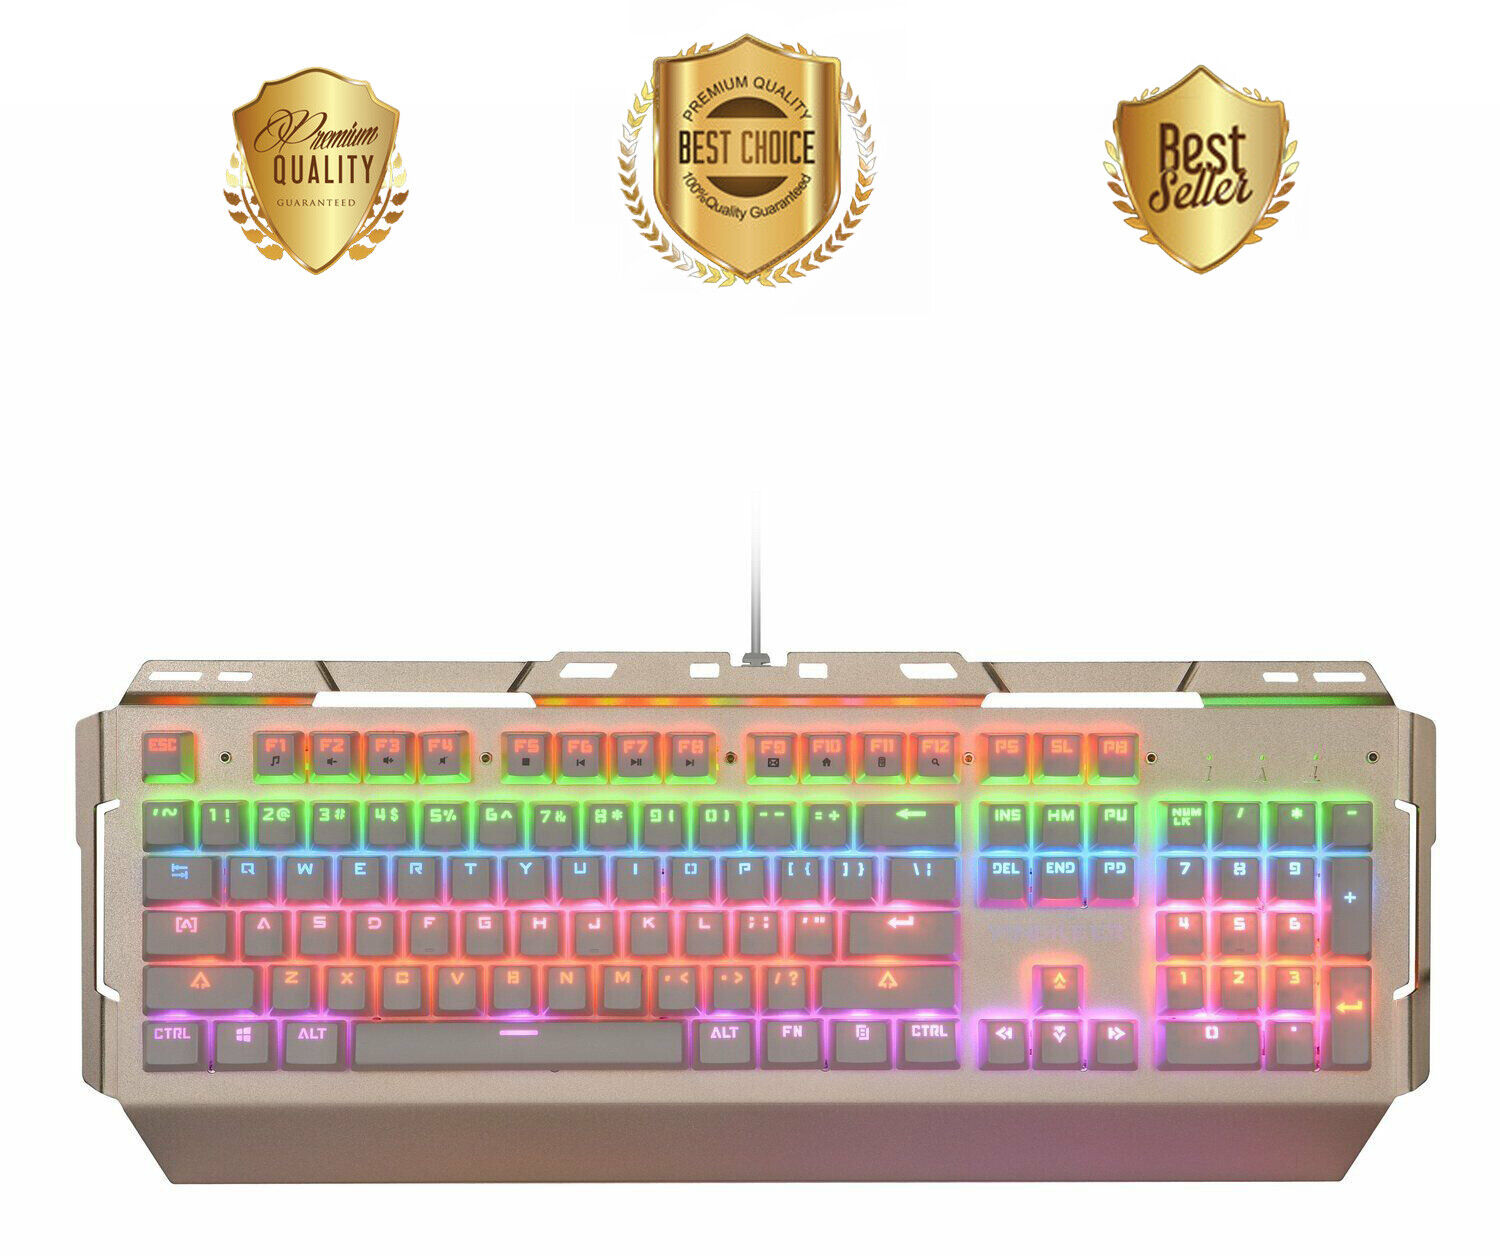 Mechanical Gaming Keyboard, Blue Switch, LED Backlit, 104 Illuminated Keys, NEW